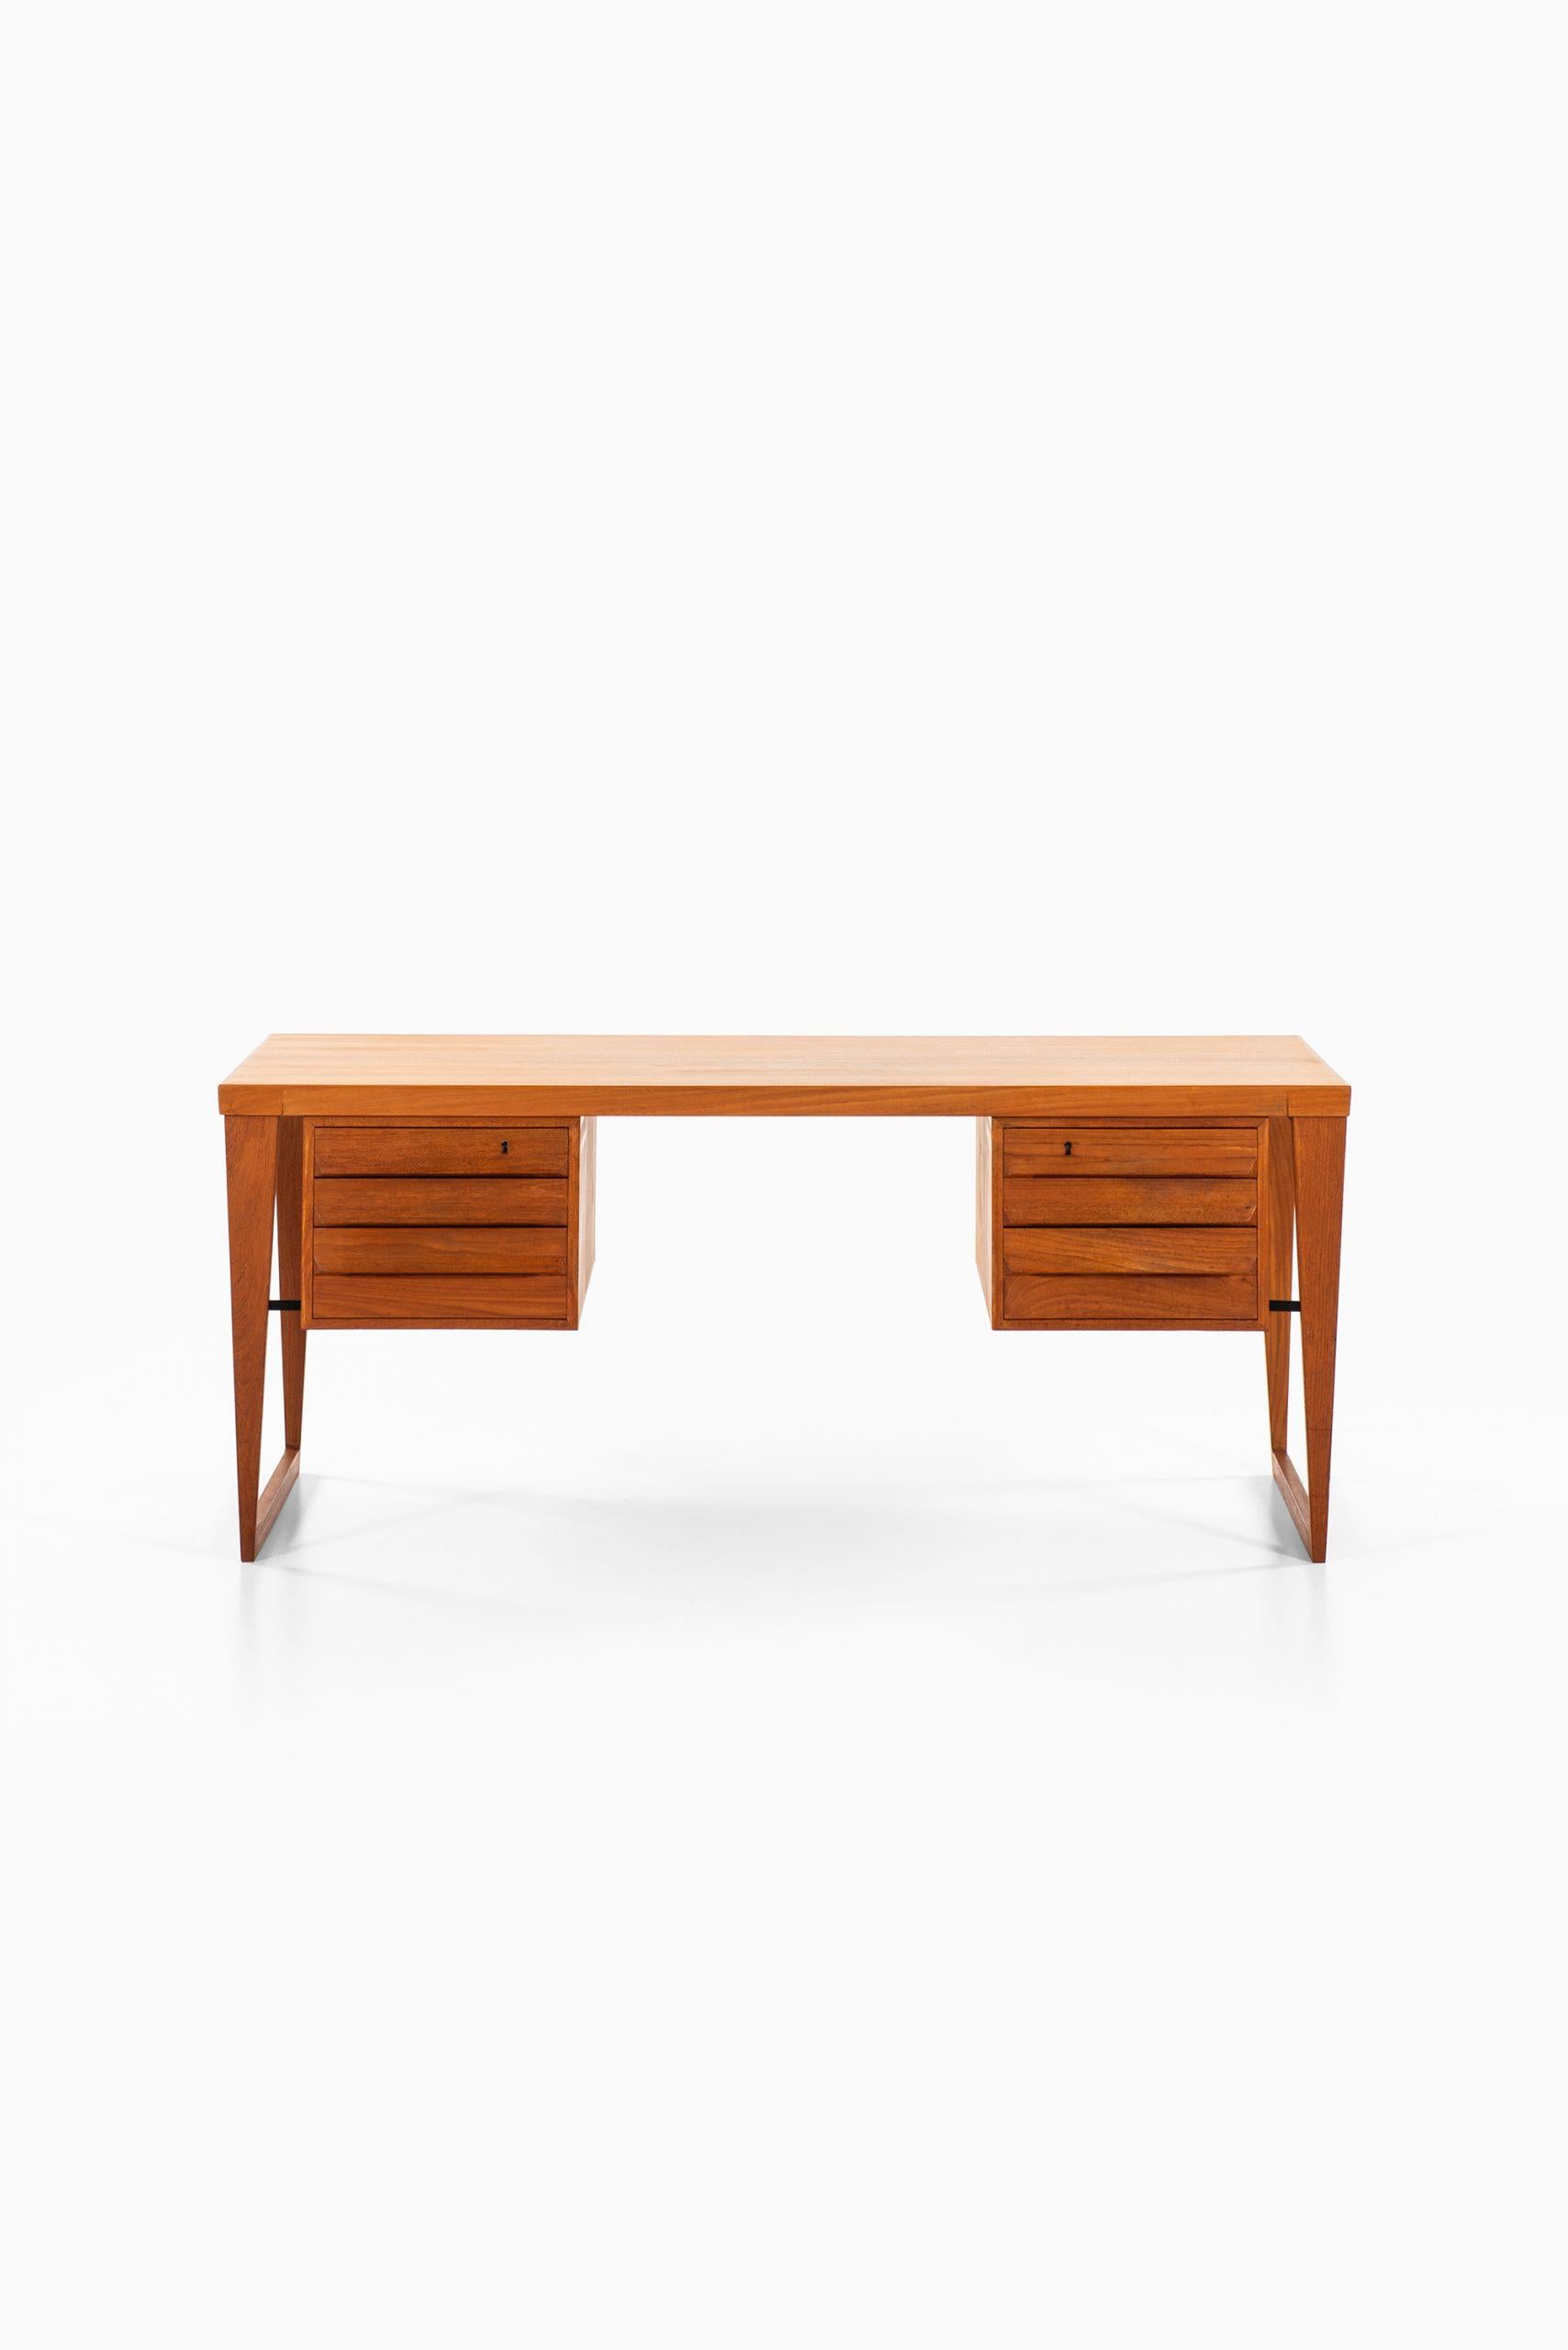 Rare freestanding desk model 70 designed by Kai Kristiansen. Produced by Feldballes Møbelfabrik in Denmark.